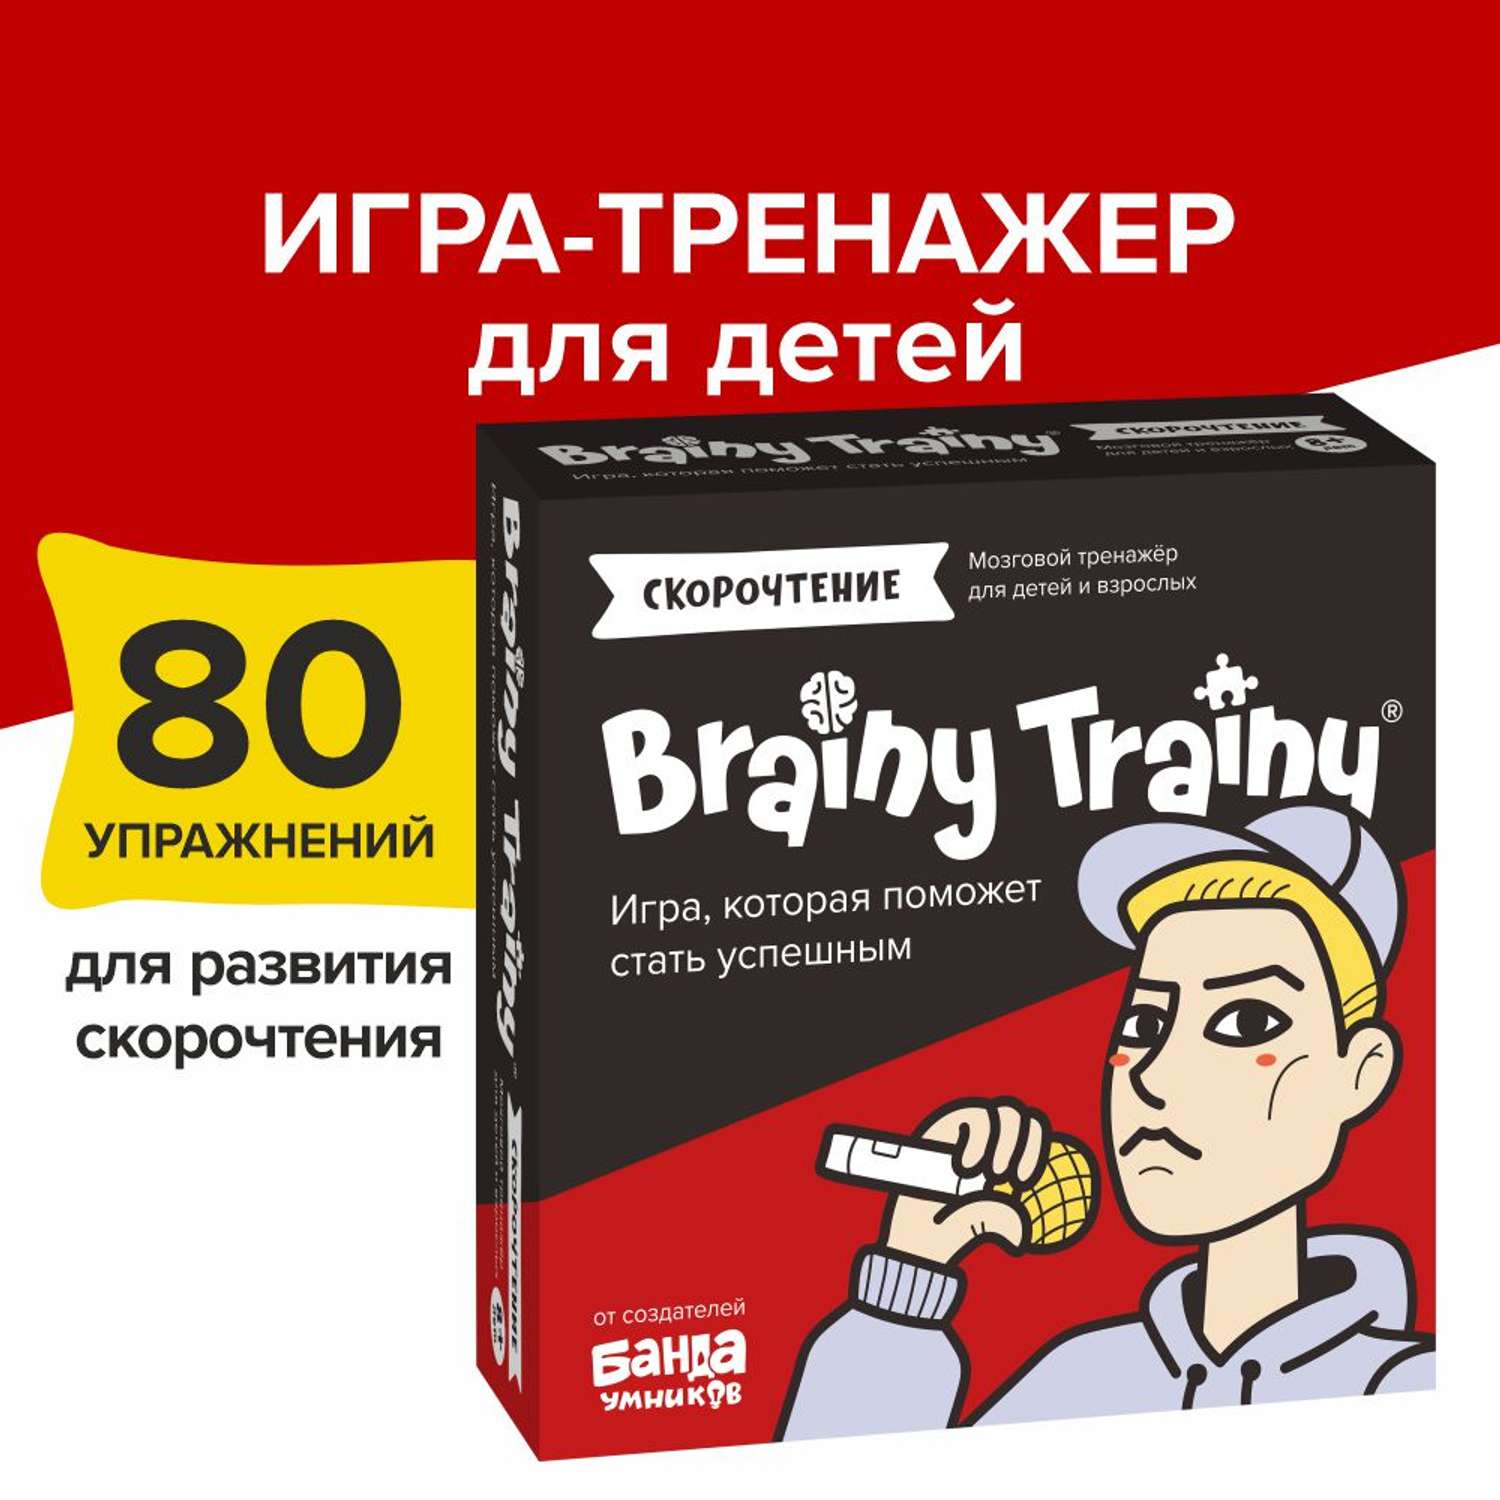 Игра-головоломка Brainy Trainy Скорочтение - фото 1